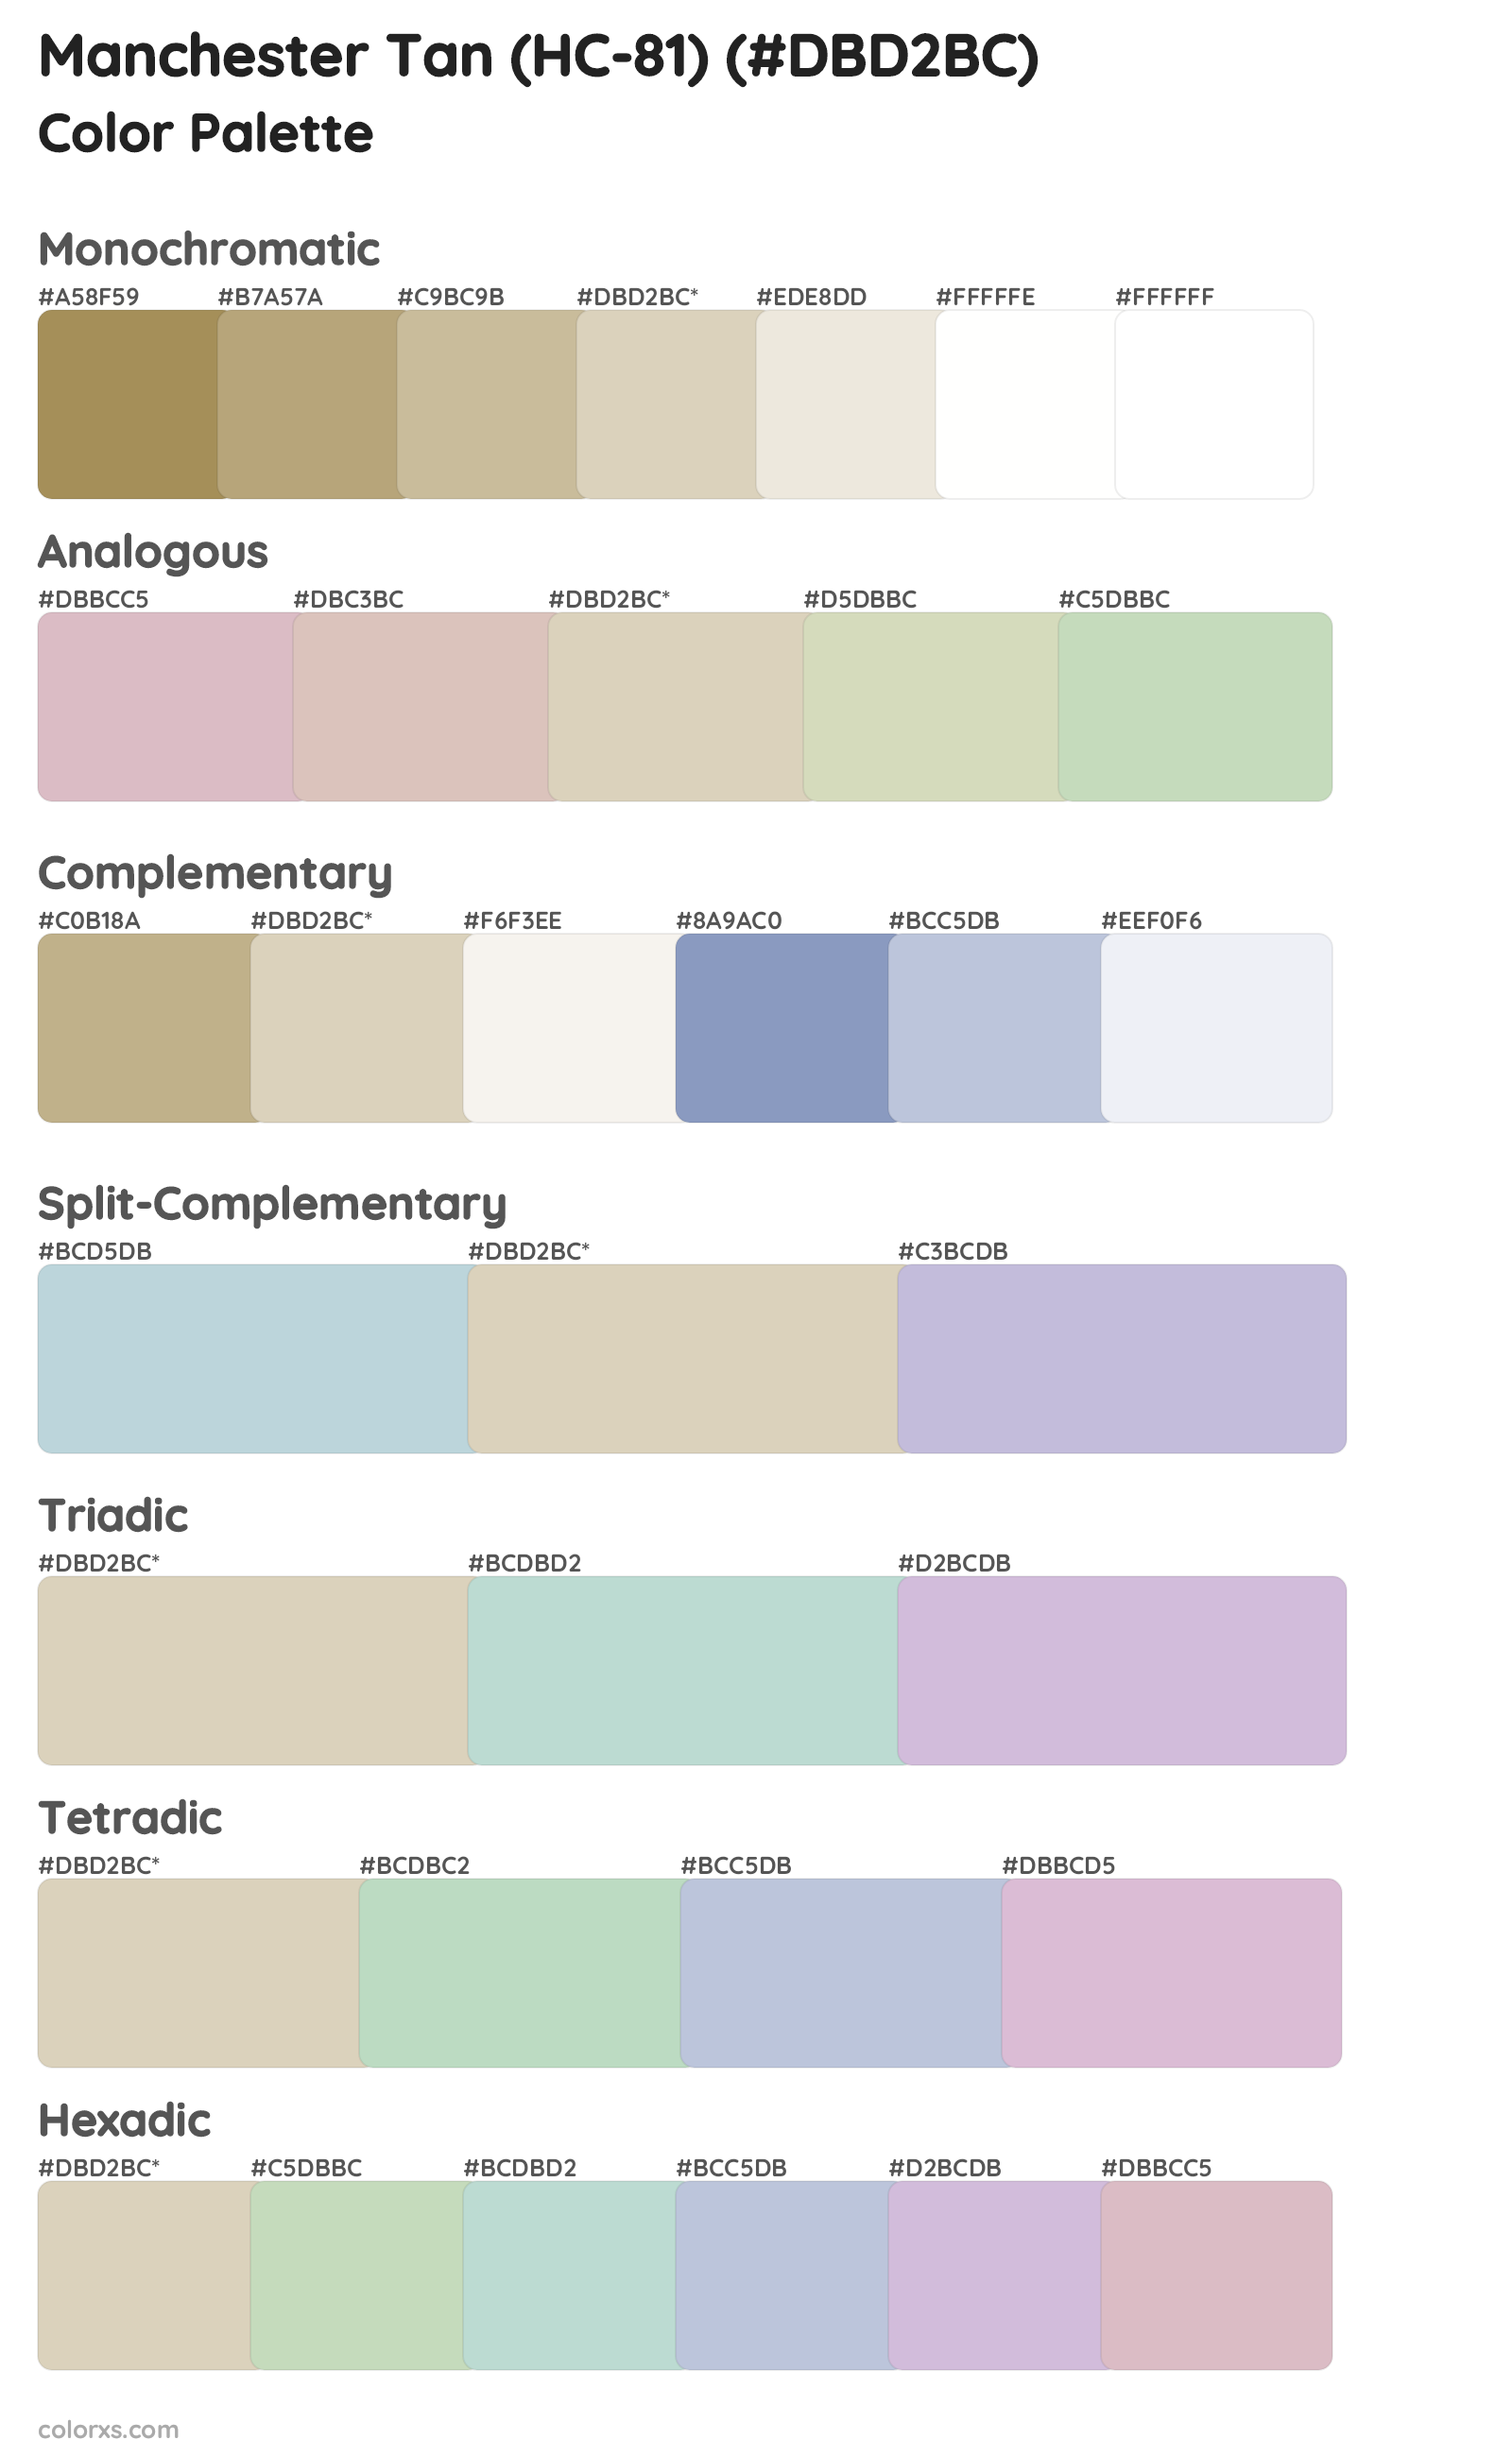 Manchester Tan (HC-81) Color Scheme Palettes